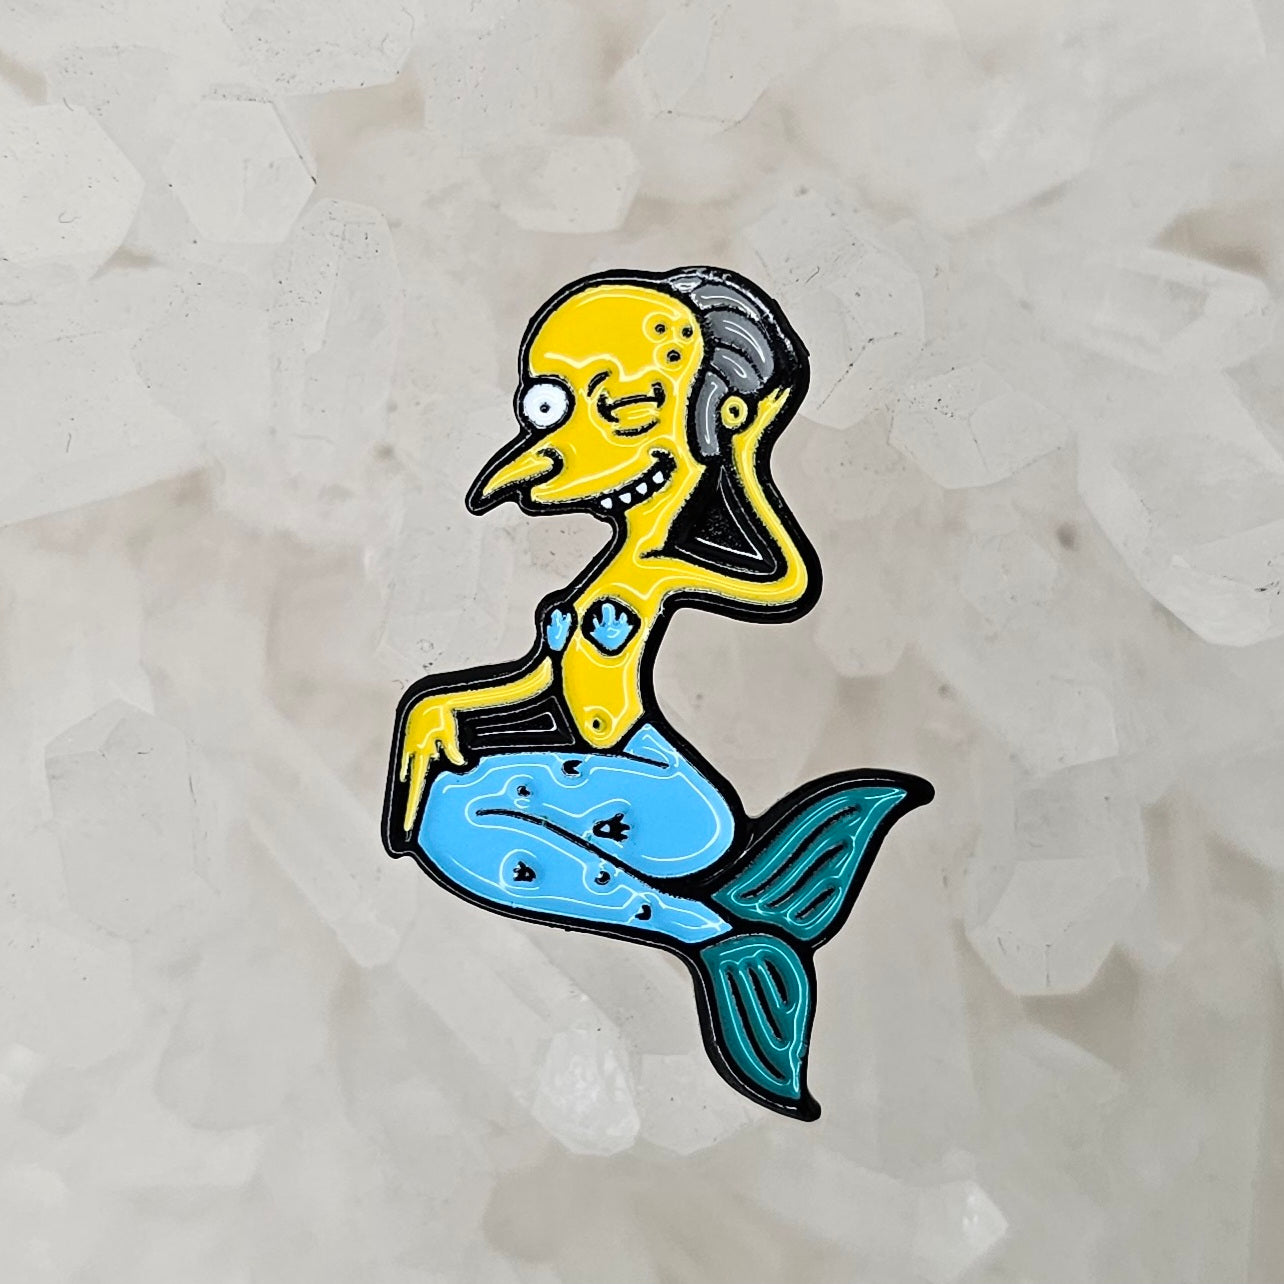 Mermaid Mr Burns Murman Sea Creature Simpson 90s Cartoon Tv Enamel Pins Hat Pins Lapel Pin Brooch Badge Festival Pin